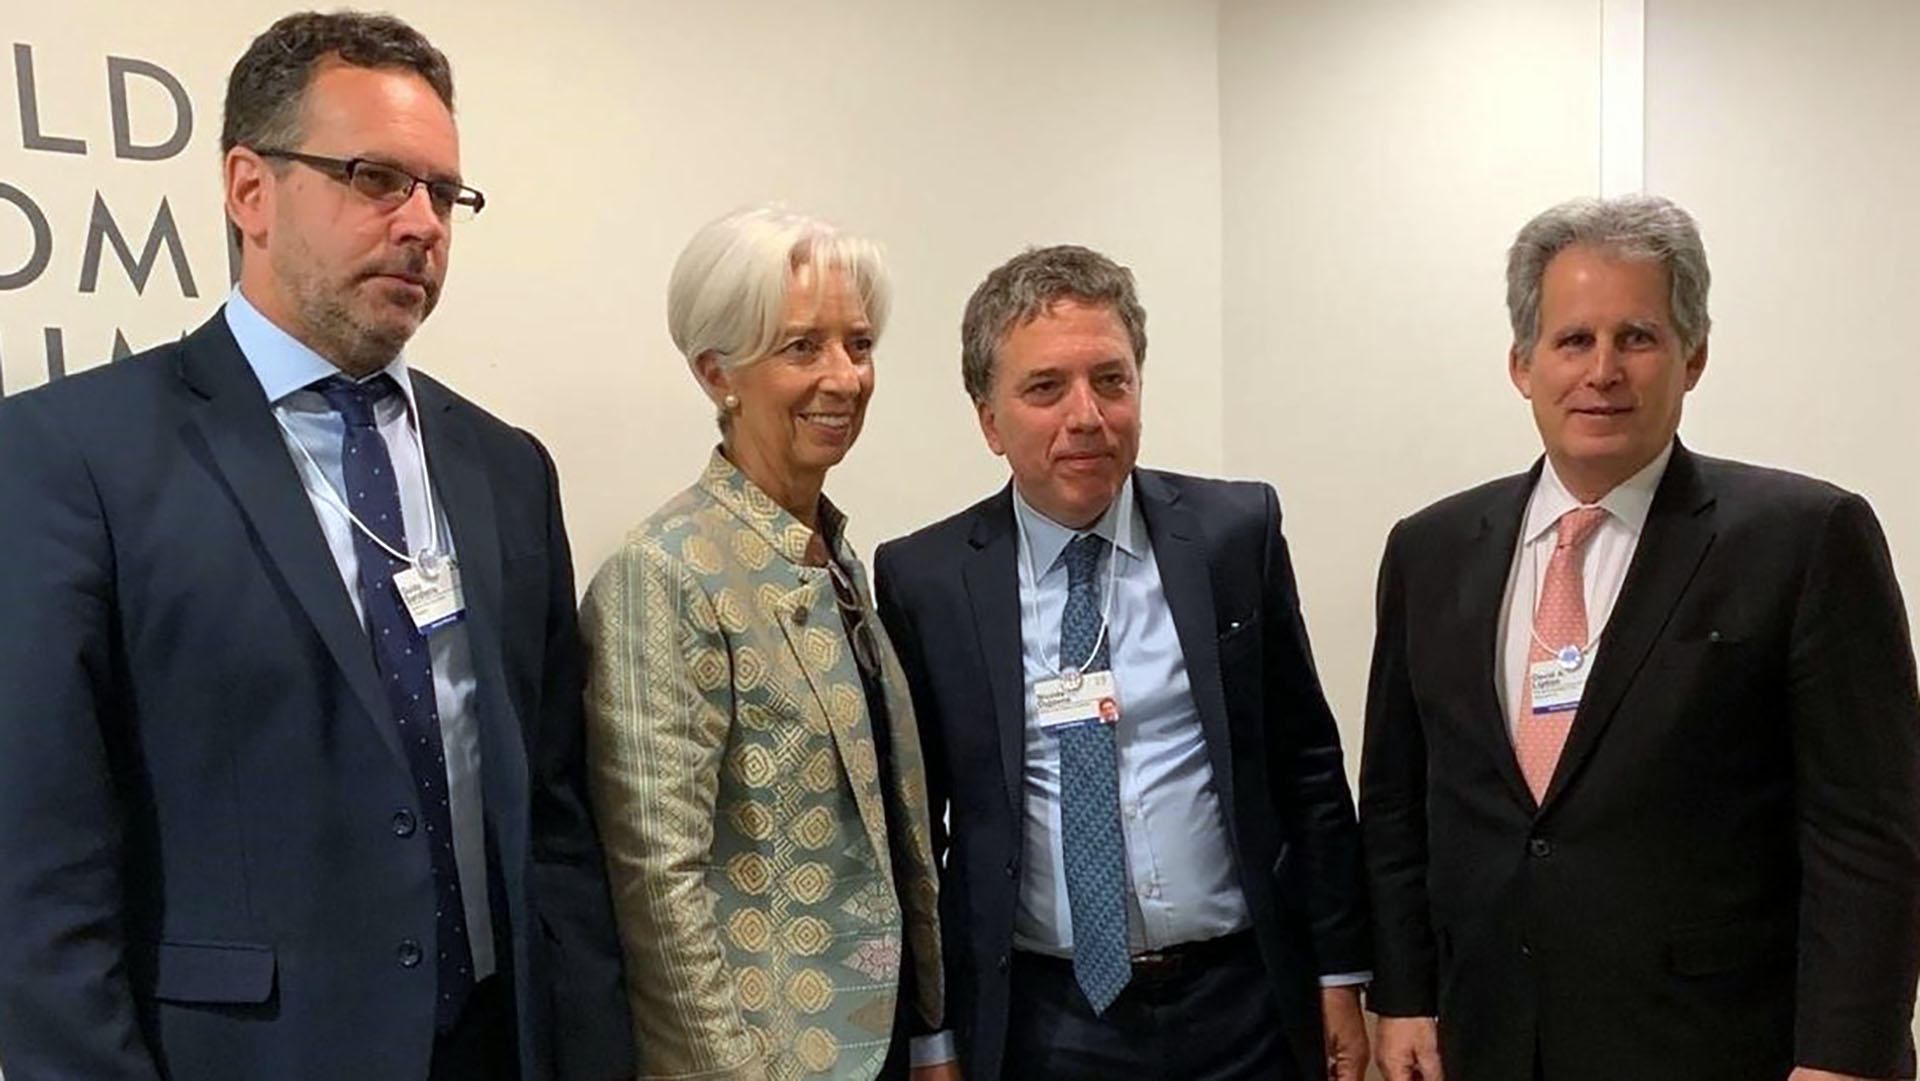 El ministro de Hacienda, Nicolás Dujovne, ajustó la propuesta presentada al FMI en junio de 2018, y designó a su viceministro, Guido Sandleris,, como presidente del Banco Central